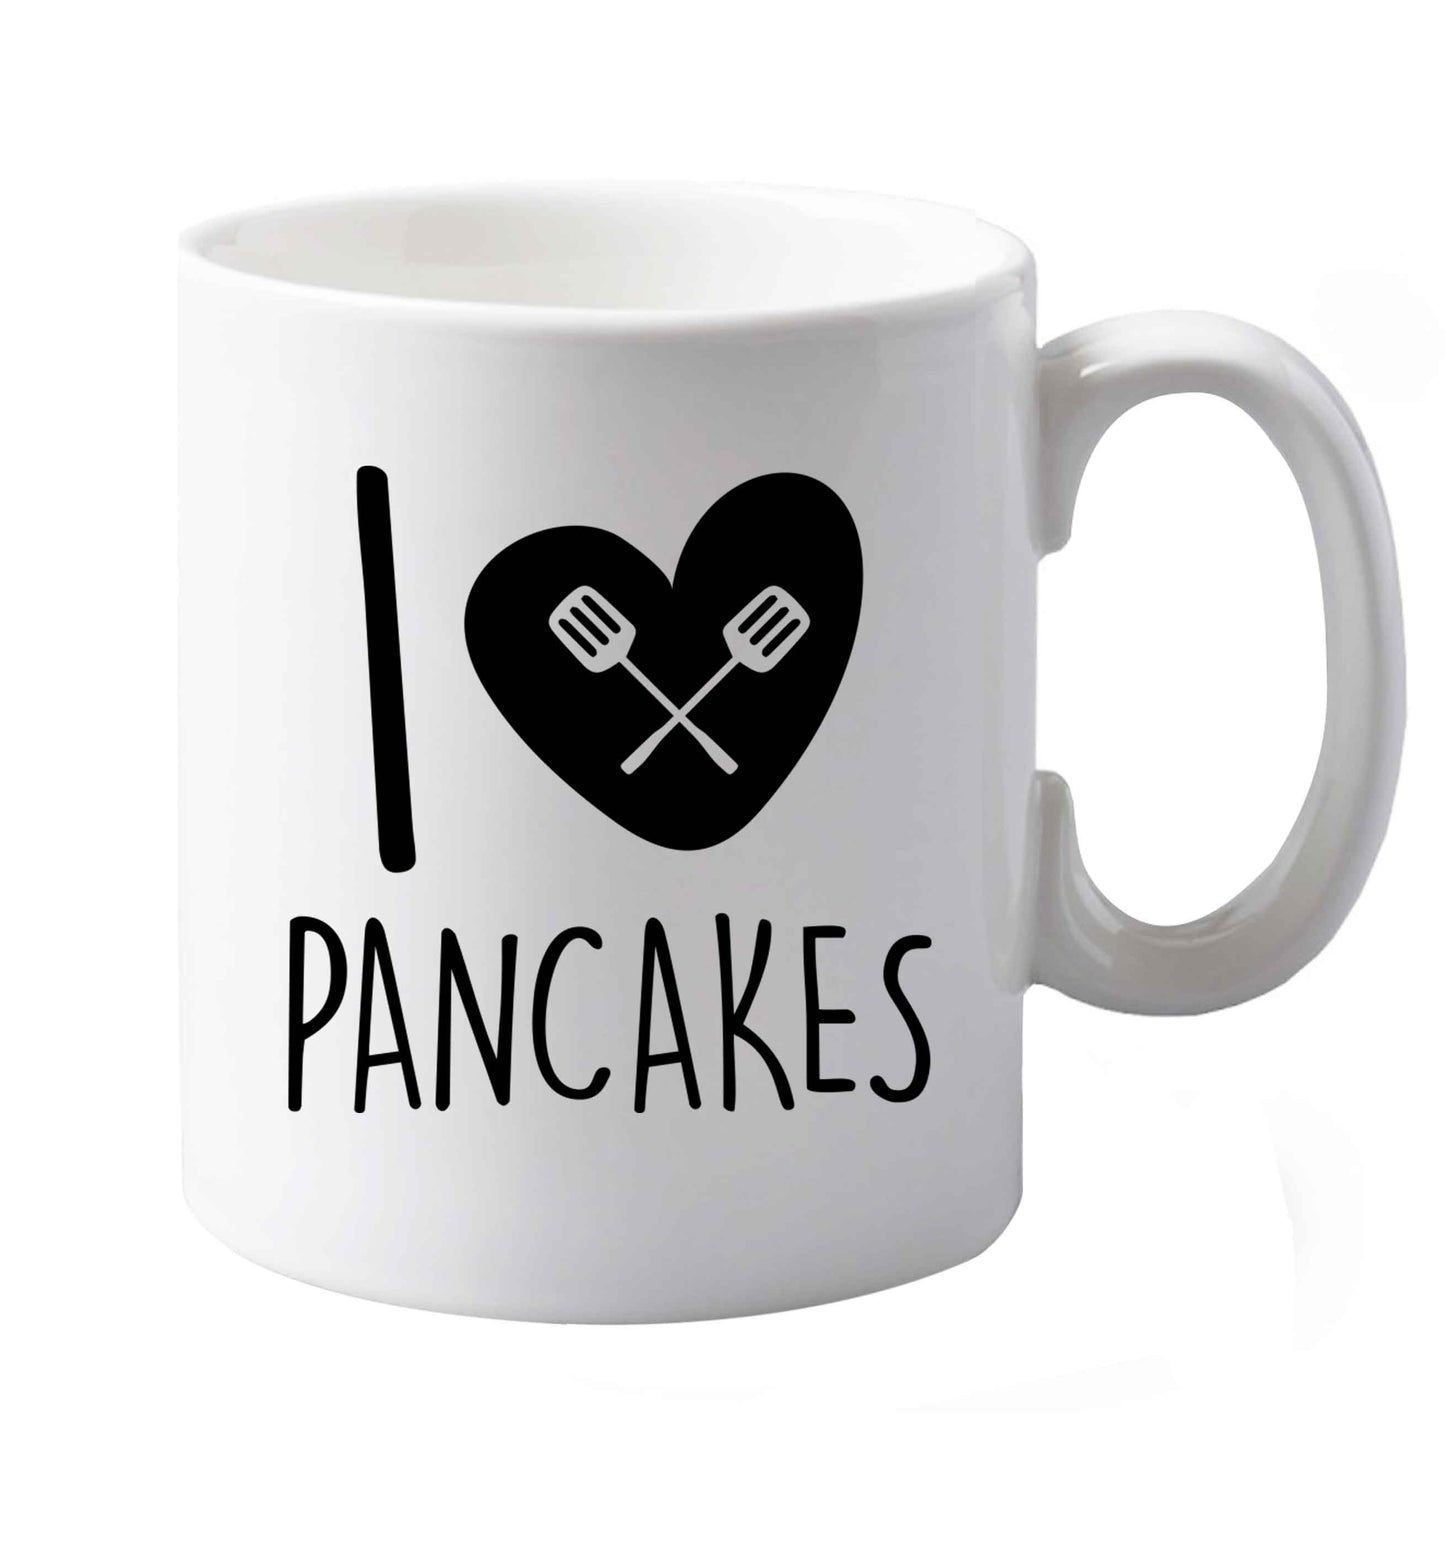 10 oz I Love Pancakes ceramic mug both sides